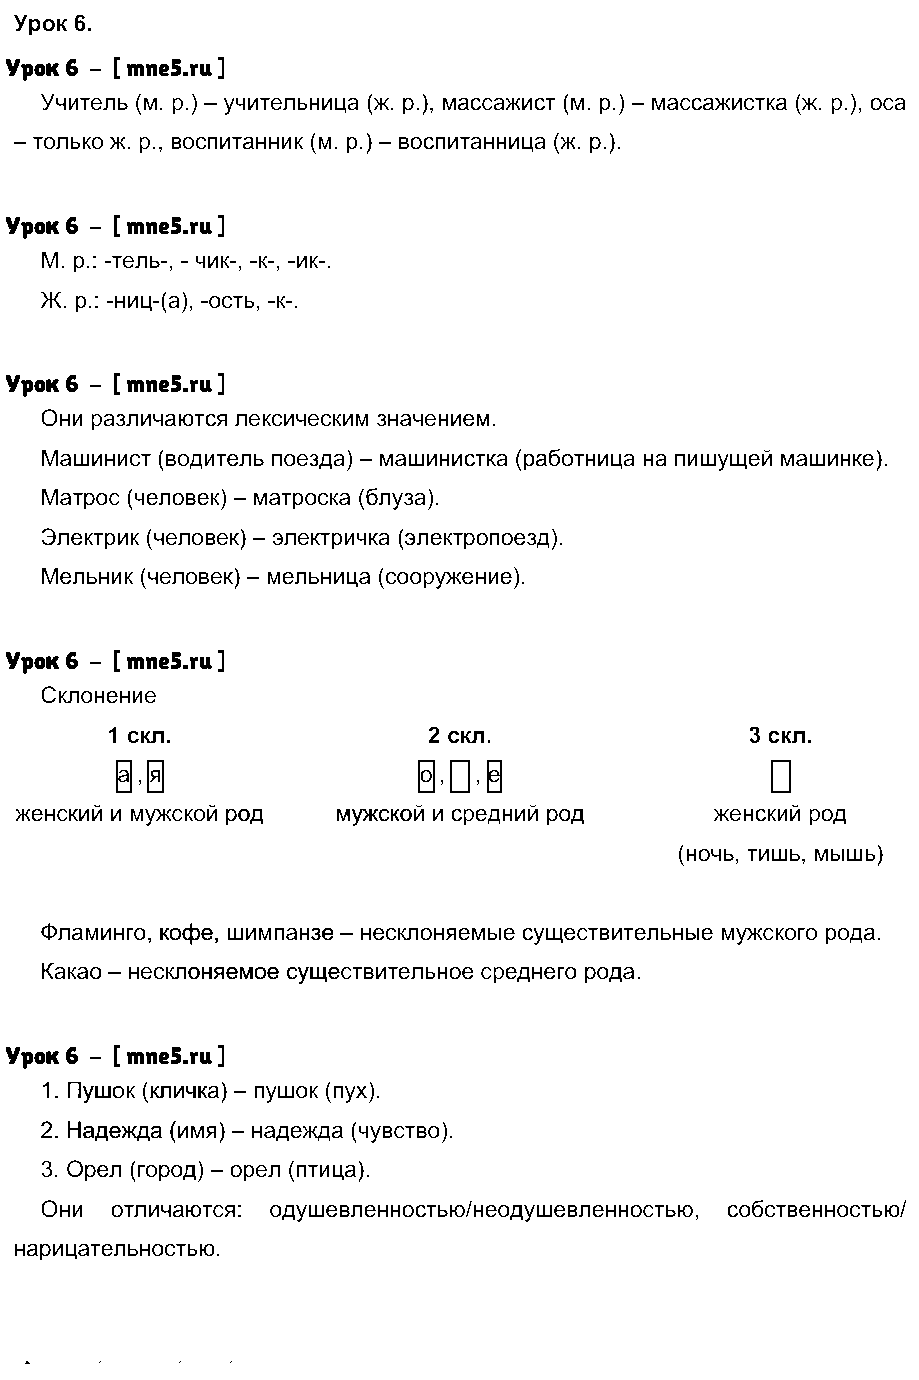 ГДЗ Русский язык 4 класс - Урок 6